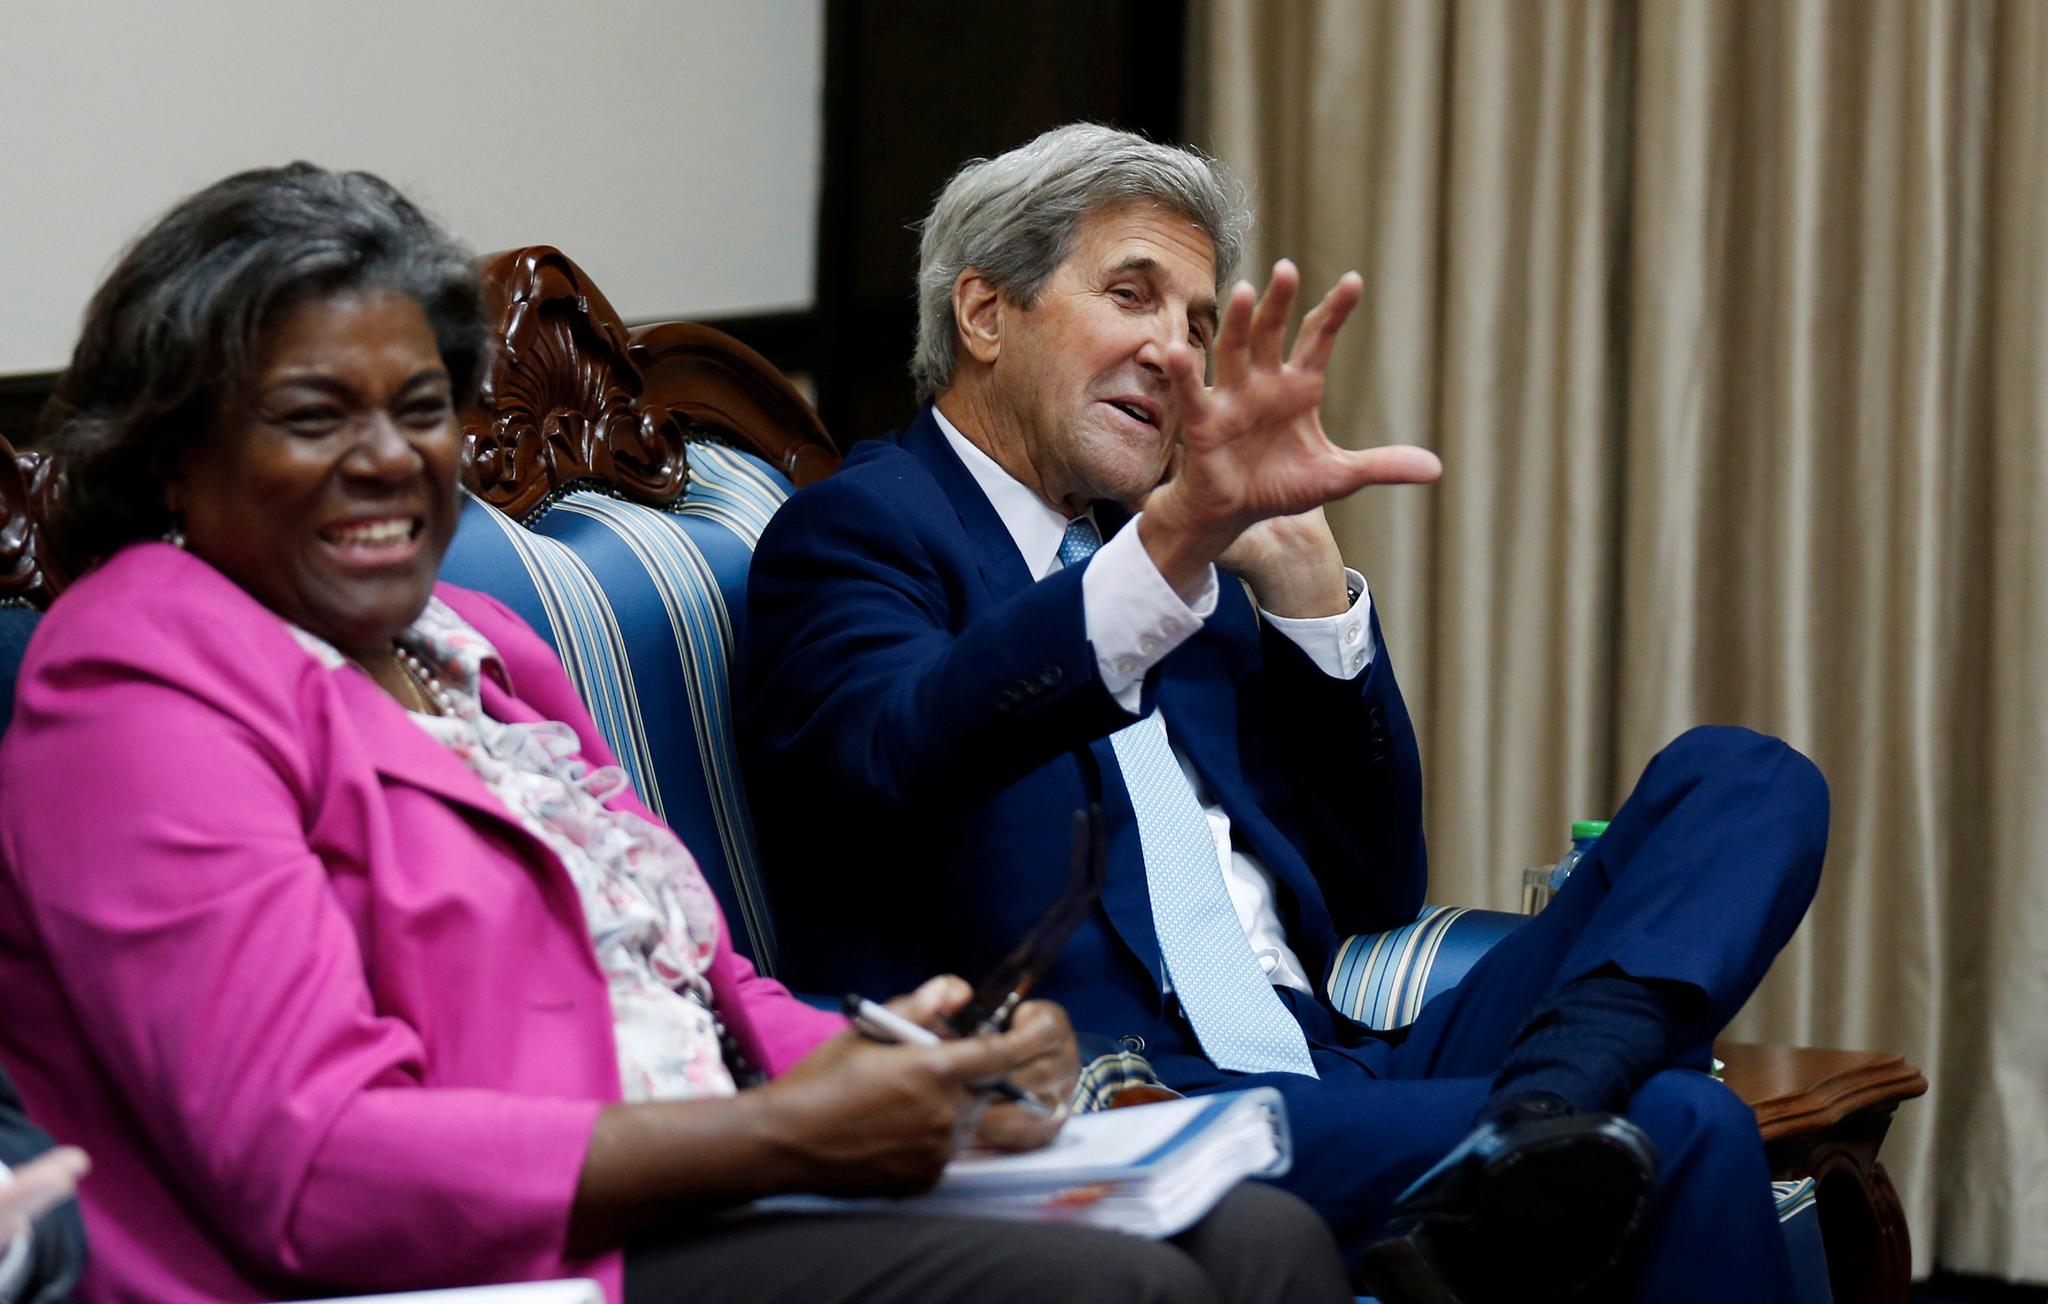 Linda Thomas-Greenfield kommer trolig til å bli lansert som USAs neste FN-ambassadør. Her er hun avbildet i Kenya sammen med daværende utenriksminister John Kerry i 2016. Hun var da assisterende utenriksminister med ansvar for Afrika.